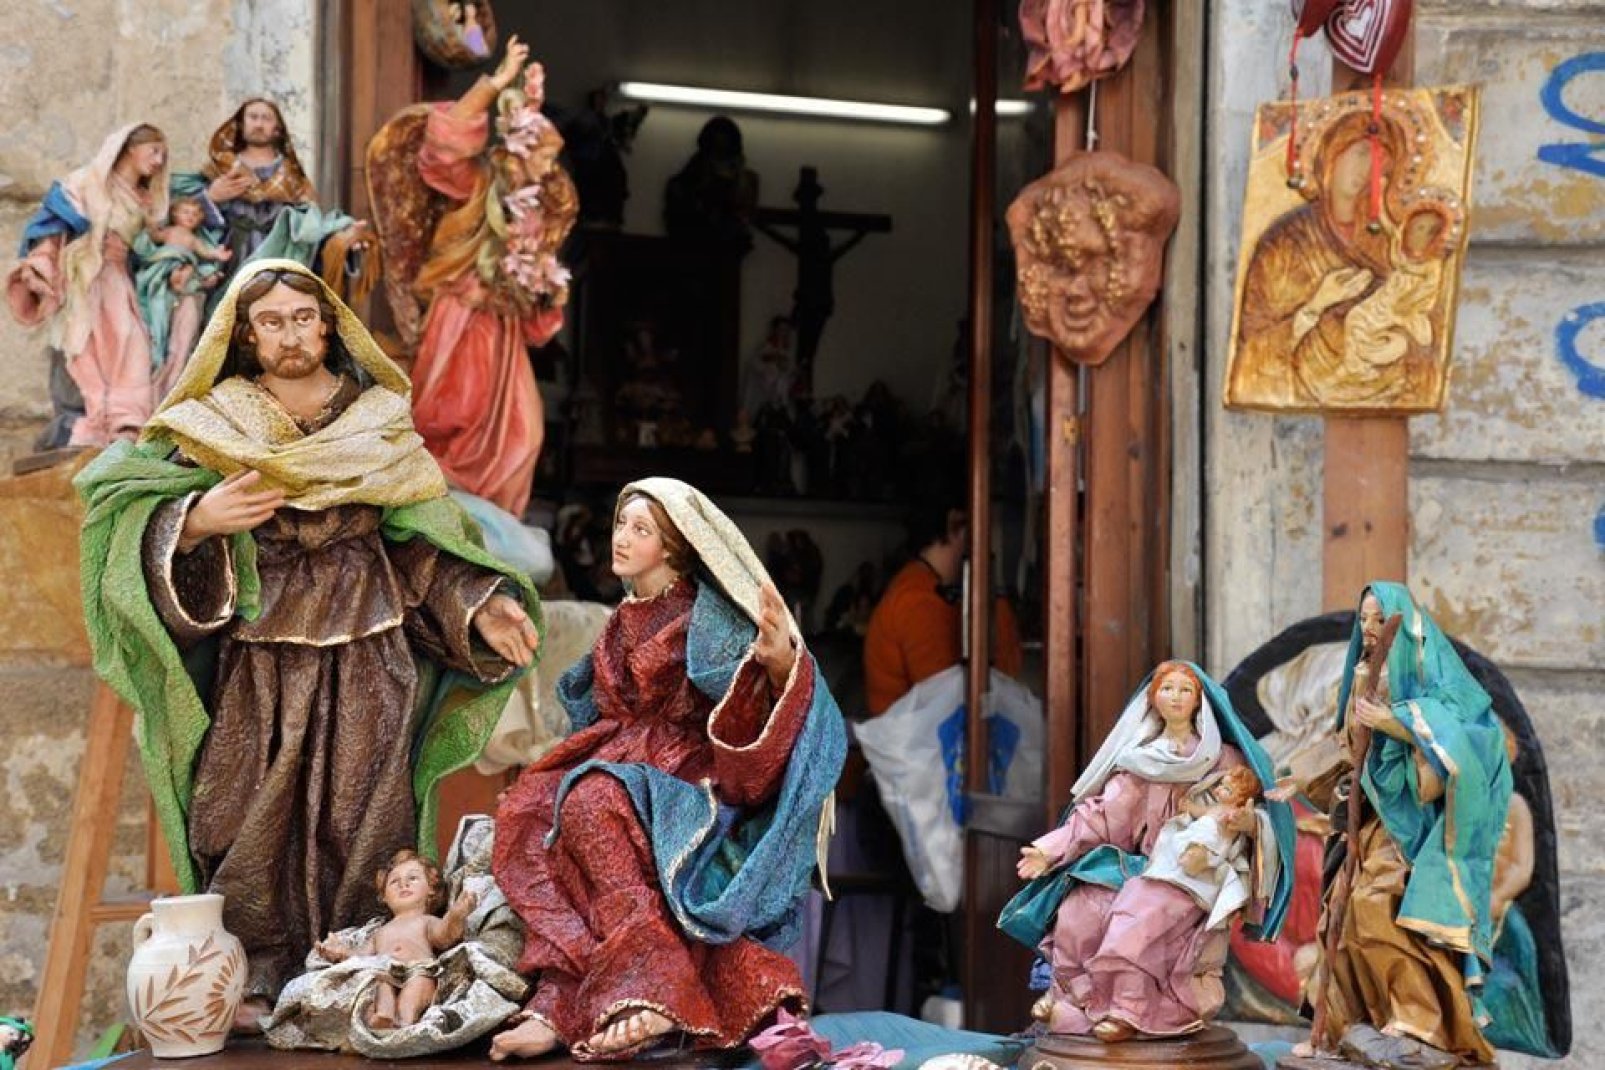 Chaque année en décembre, on peut visiter l'exposition annuelle des crèches au Monastère des Teatini